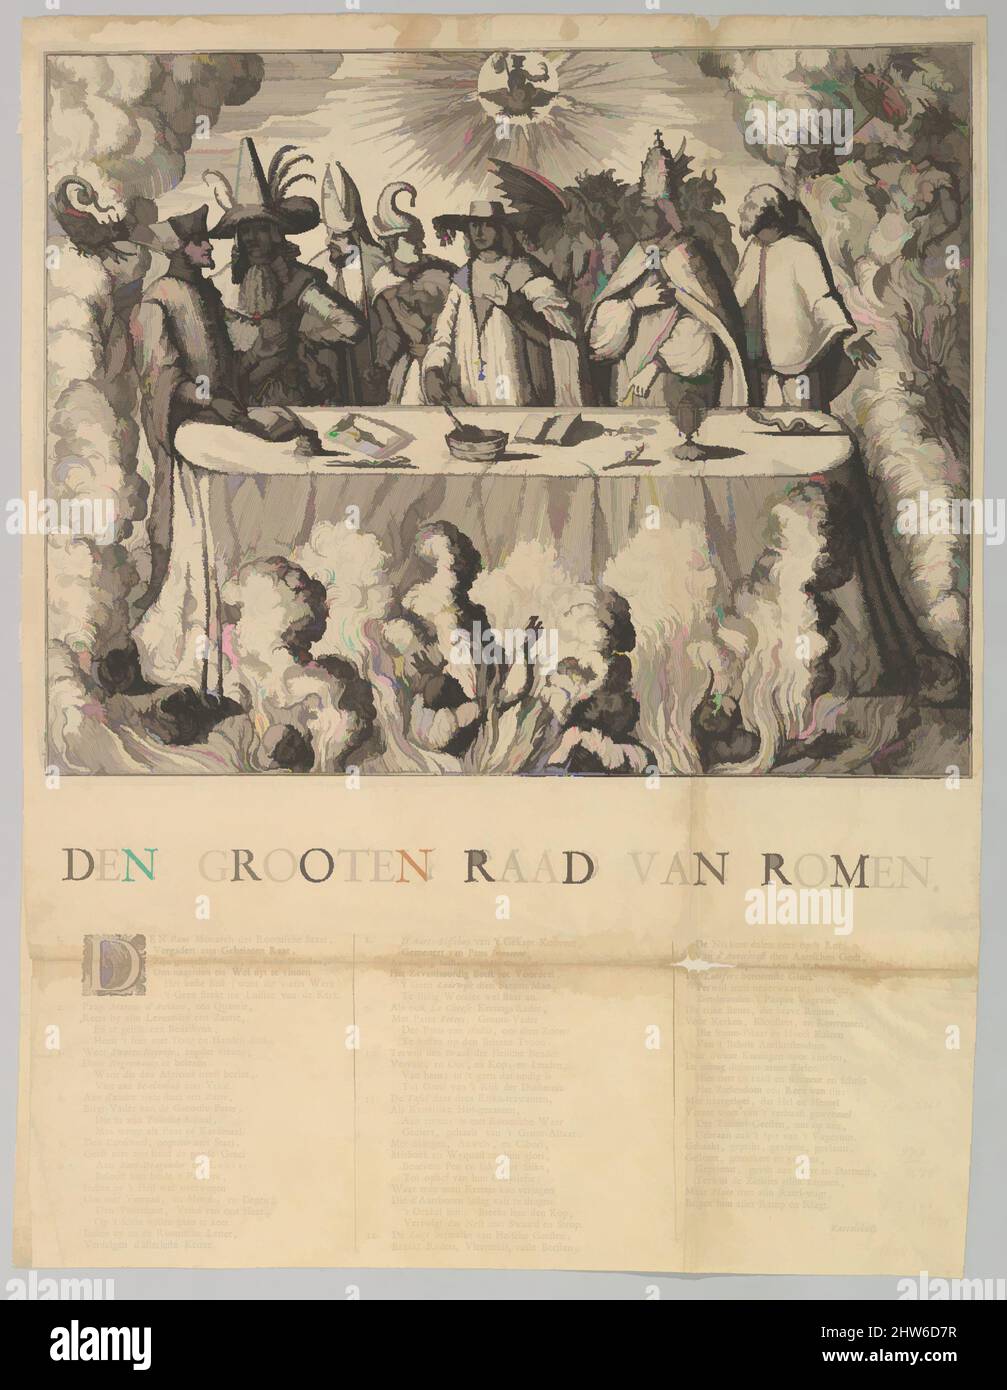 Kunst inspiriert von Den Grooten Raad van Romen, 1665–1708, Radierung, Drucke, Stil von Romeyn de Hooghe (Niederländisch, 1645–1708, Klassische Werke, die von Artotop mit einem Schuss Moderne modernisiert wurden. Formen, Farbe und Wert, auffällige visuelle Wirkung auf Kunst. Emotionen durch Freiheit von Kunstwerken auf zeitgemäße Weise. Eine zeitlose Botschaft, die eine wild kreative neue Richtung verfolgt. Künstler, die sich dem digitalen Medium zuwenden und die Artotop NFT erschaffen Stockfoto